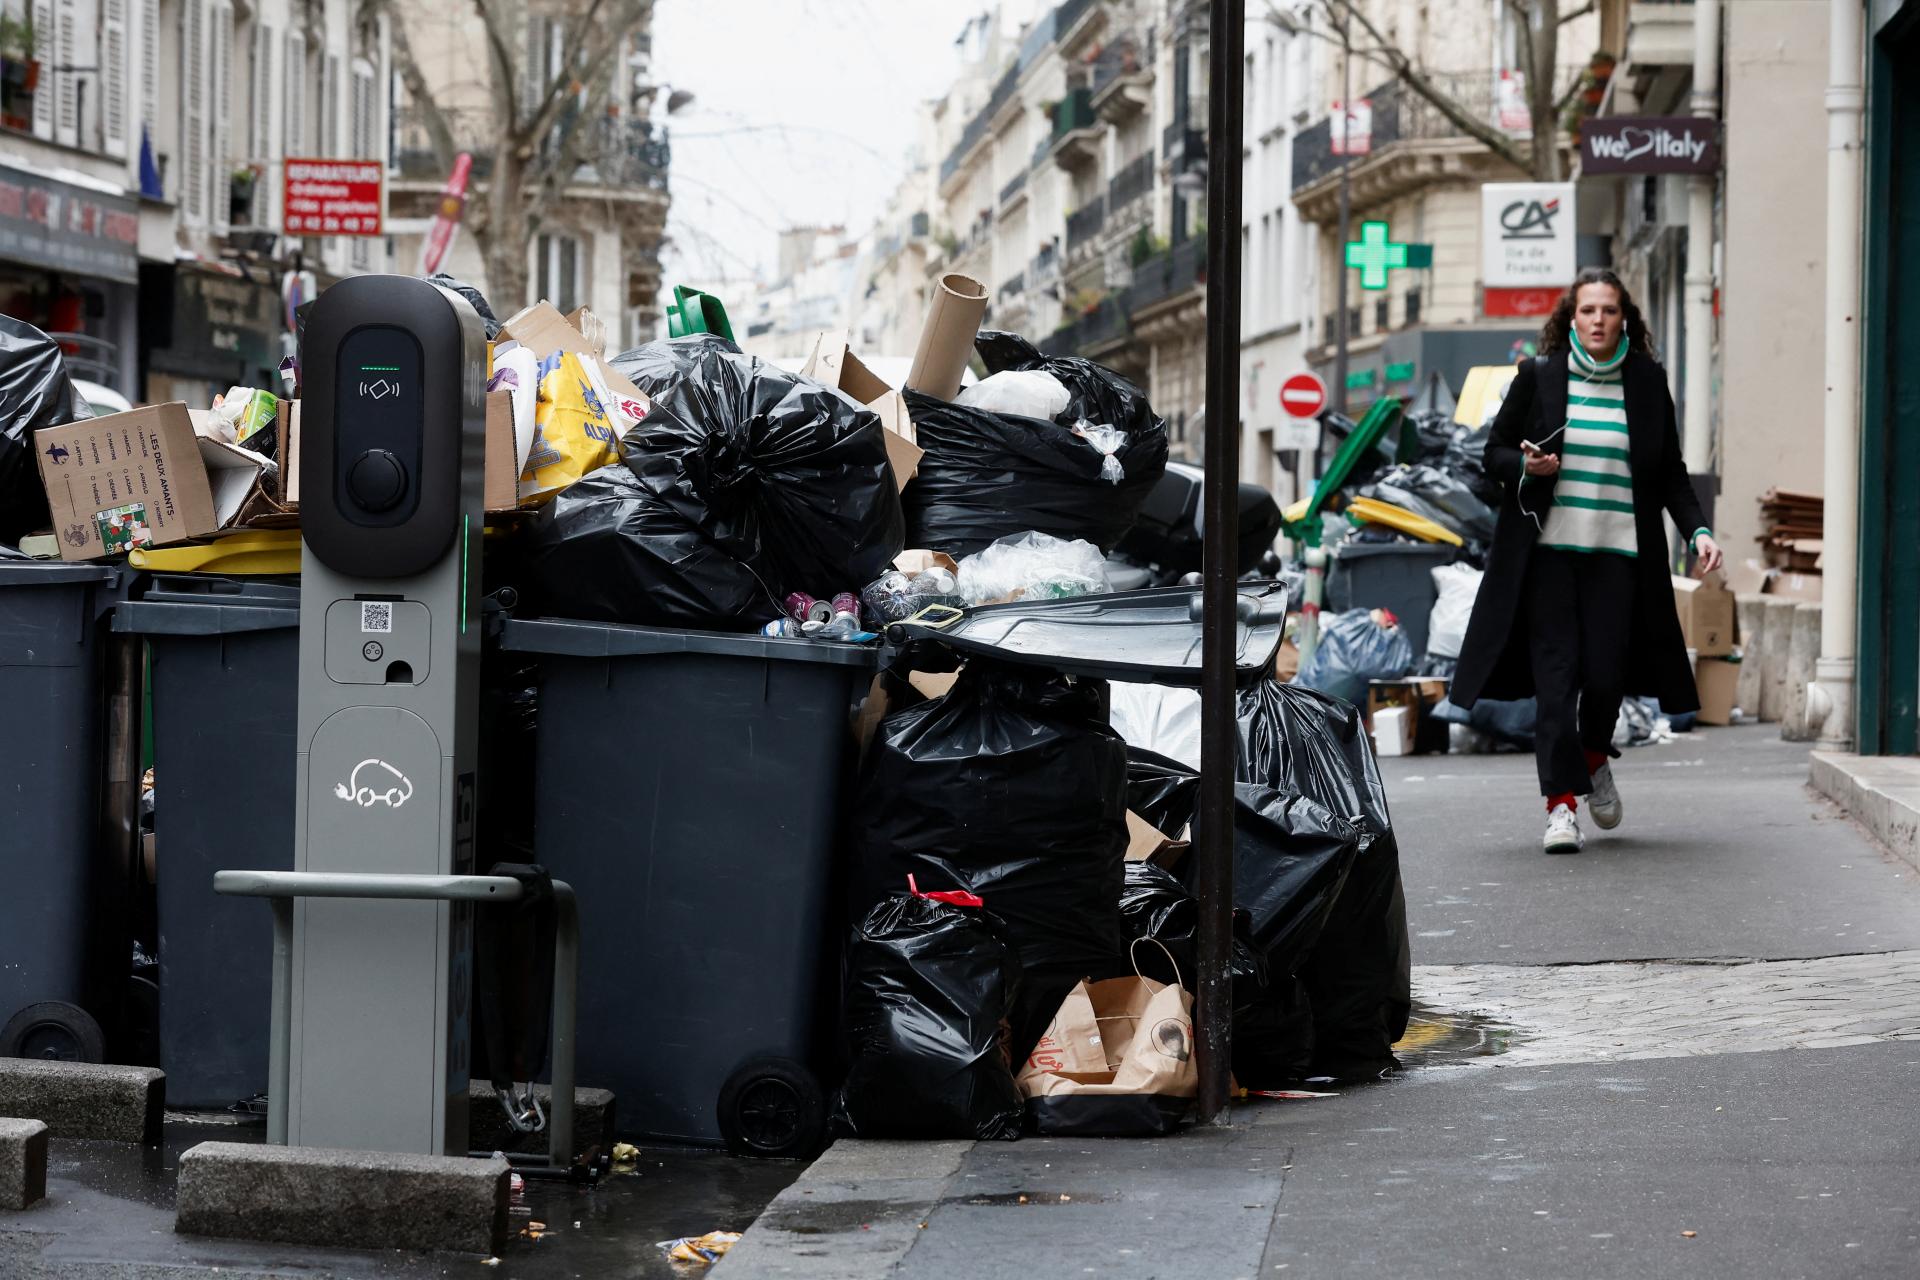 Paríž zaplavili kopy odpadkov a potkany, ľudia sa boja o zdravie. Nebudú vás napádať, tvrdí lekár (+galéria)